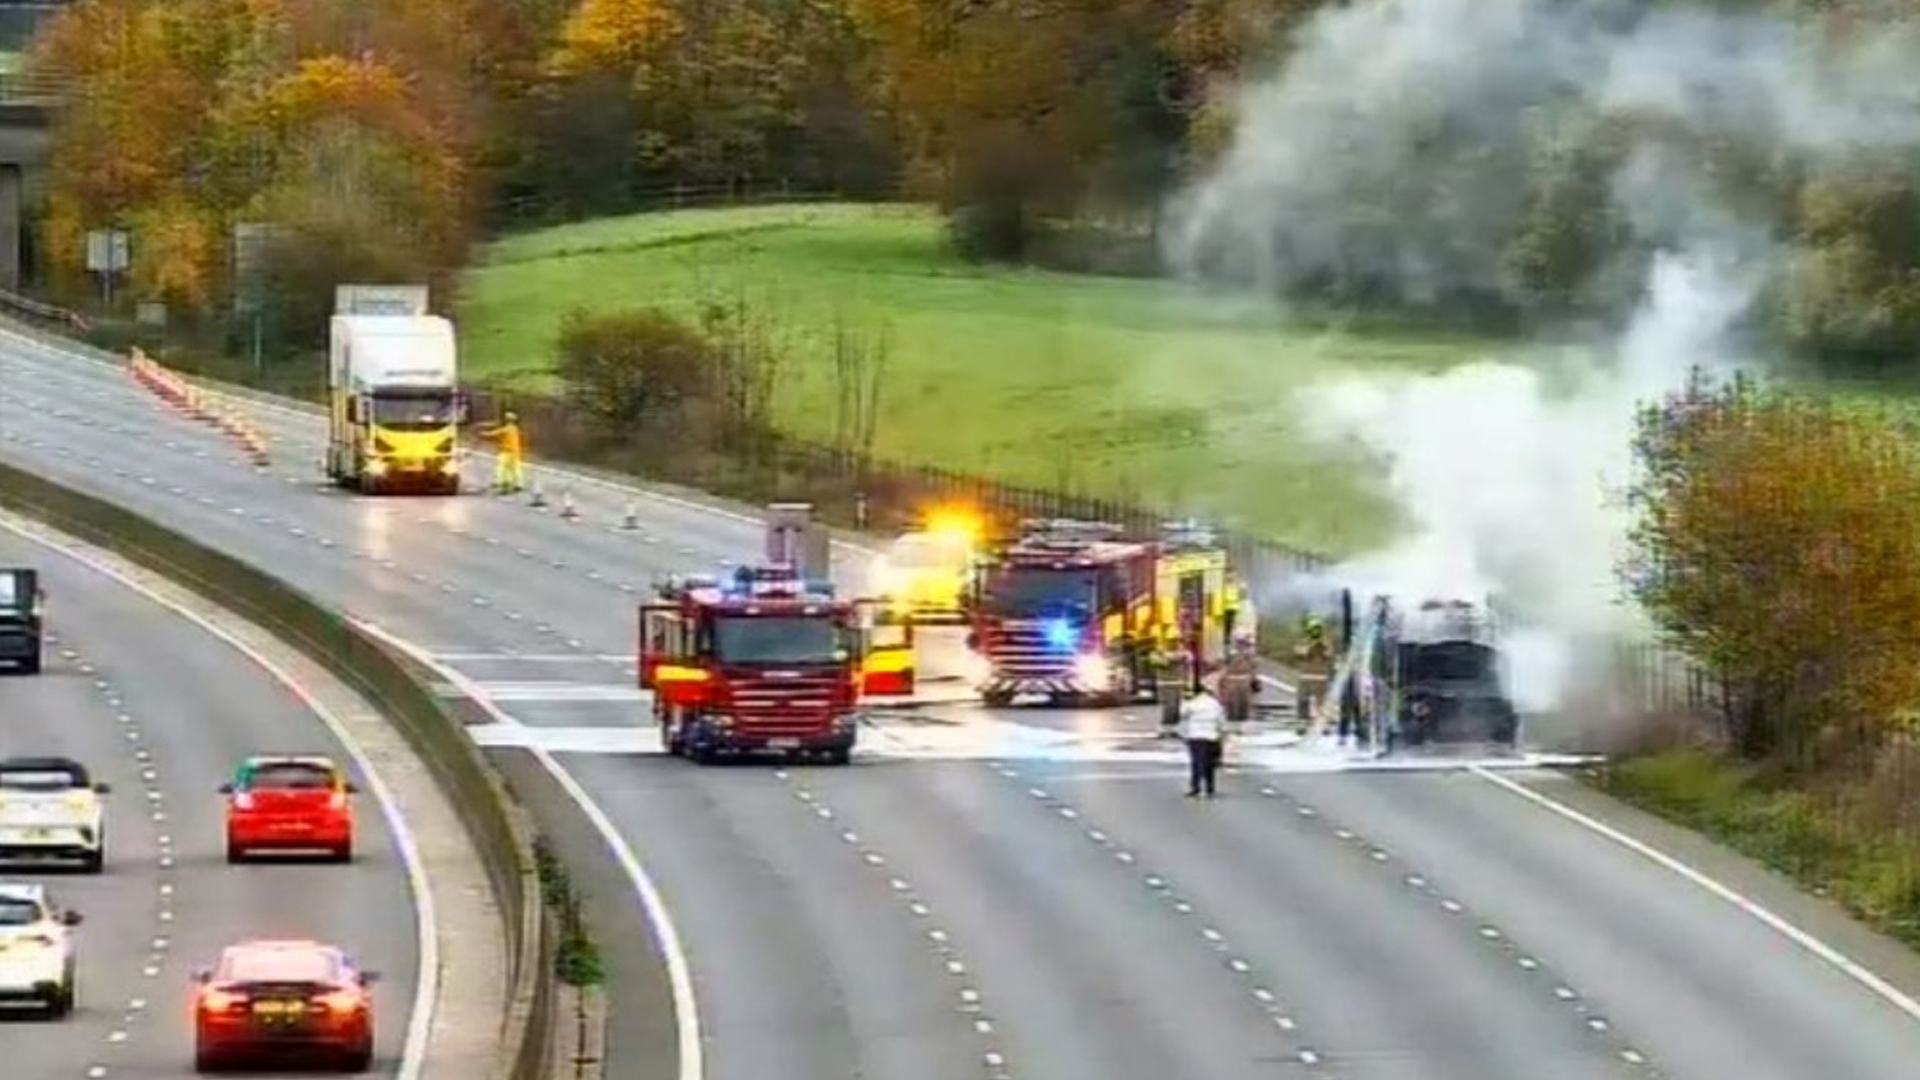 Auf der M25 ist ein Lieferwagenbrand ausgebrochen, der zu einem Verkehrschaos zur Hauptverkehrszeit geführt hat